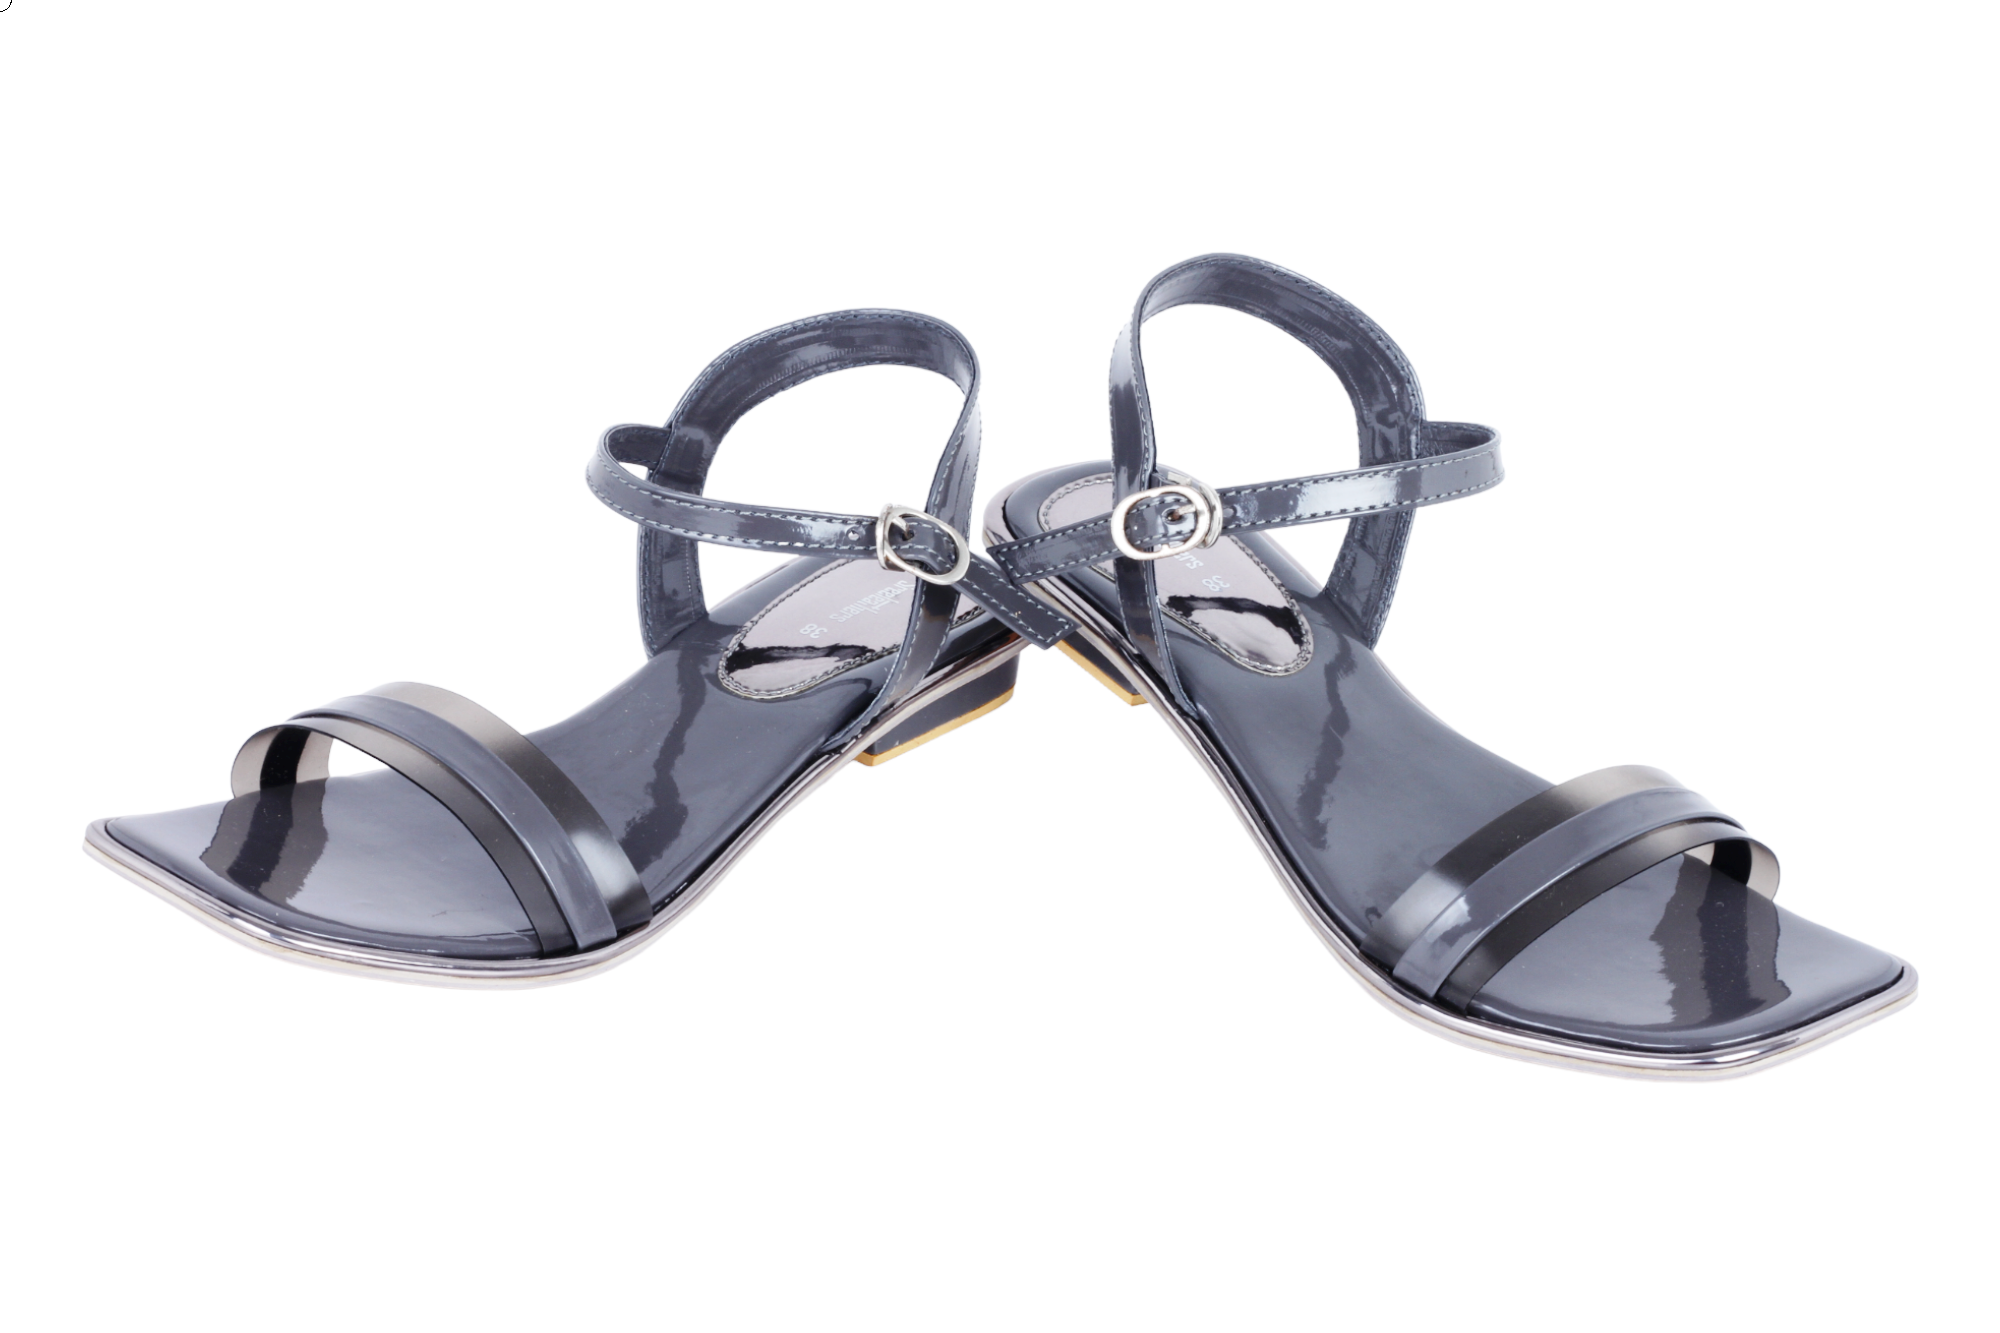 BATA Men's Slippers Walker Th Flip-Flops Open Toe Rubber Sole synthetic  Slip -On | eBay